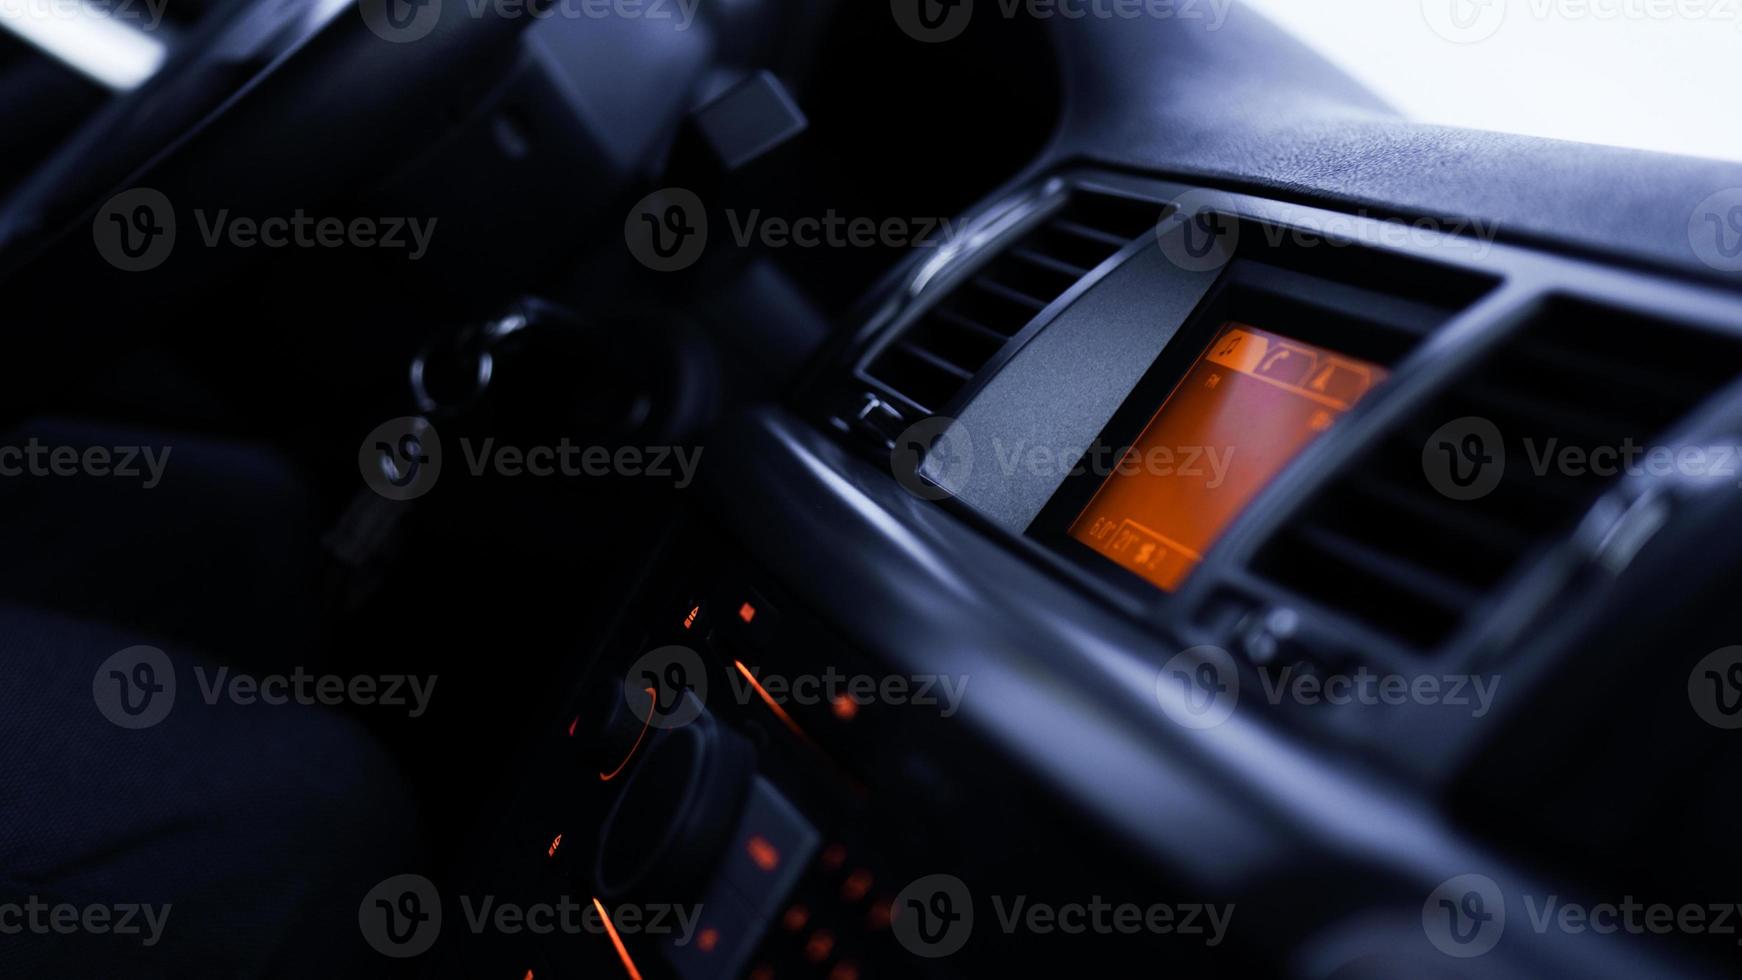 knappar på radio, instrumentpanel, klimatkontroll i bil på nära håll foto